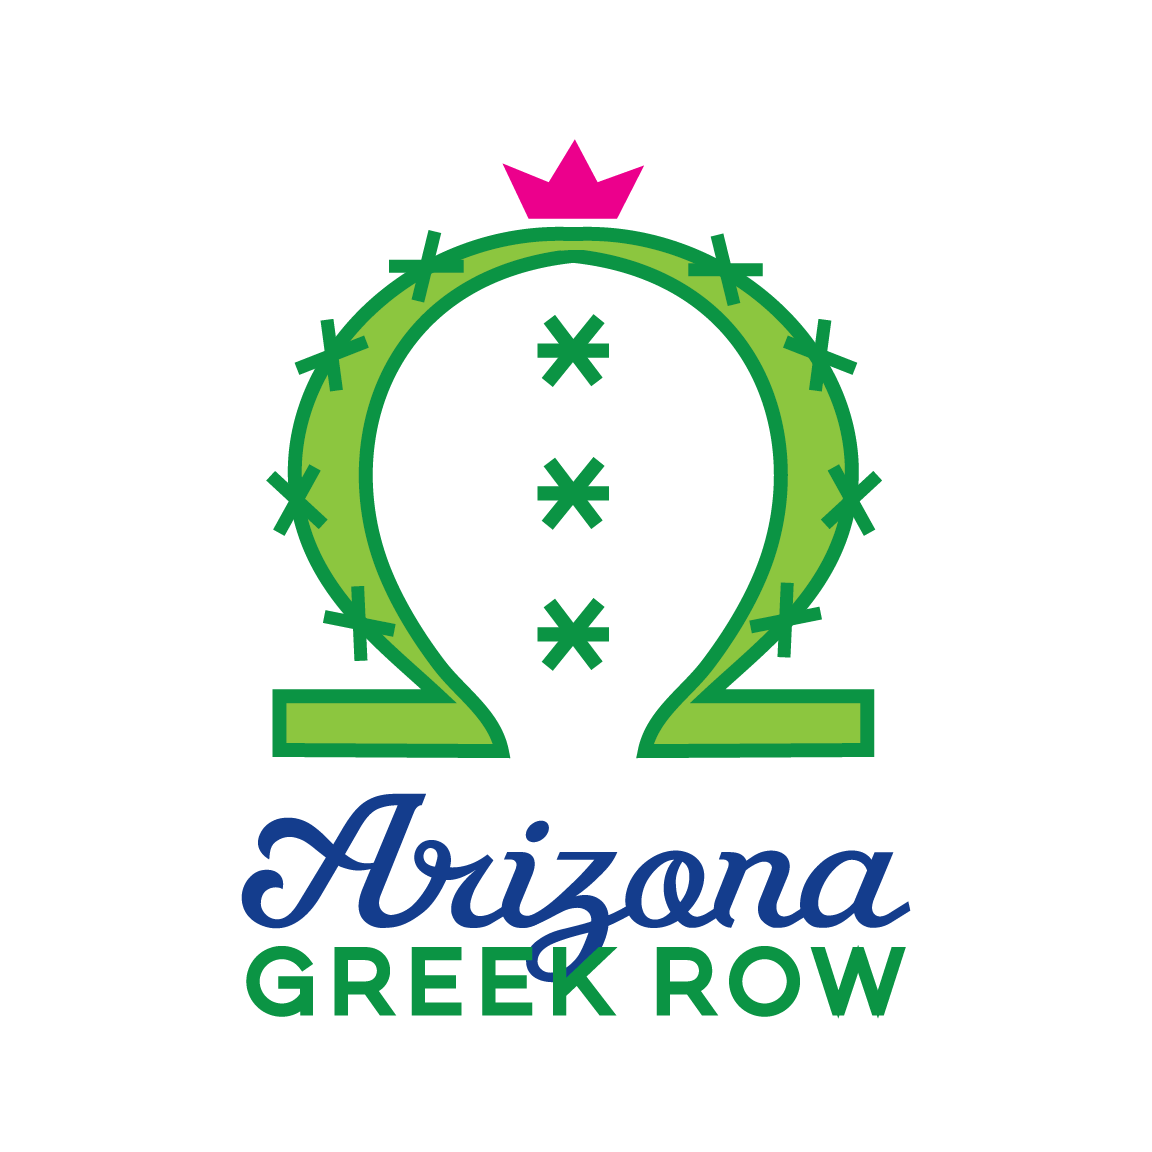 Arizona Greek Row